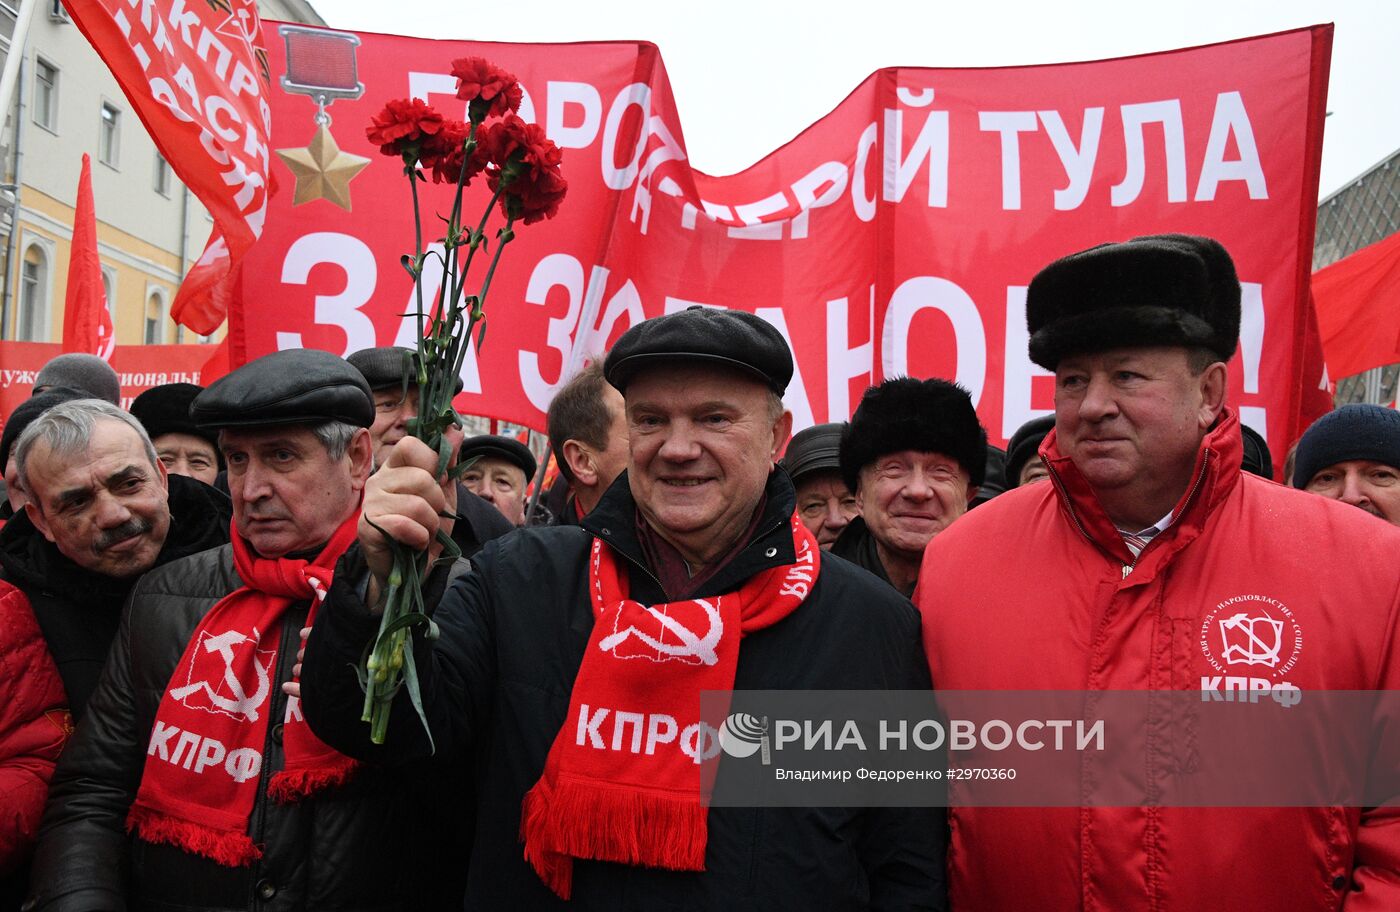 Мероприятия в Москве, посвященные 99-й годовщине Великой Октябрьской социалистической революции